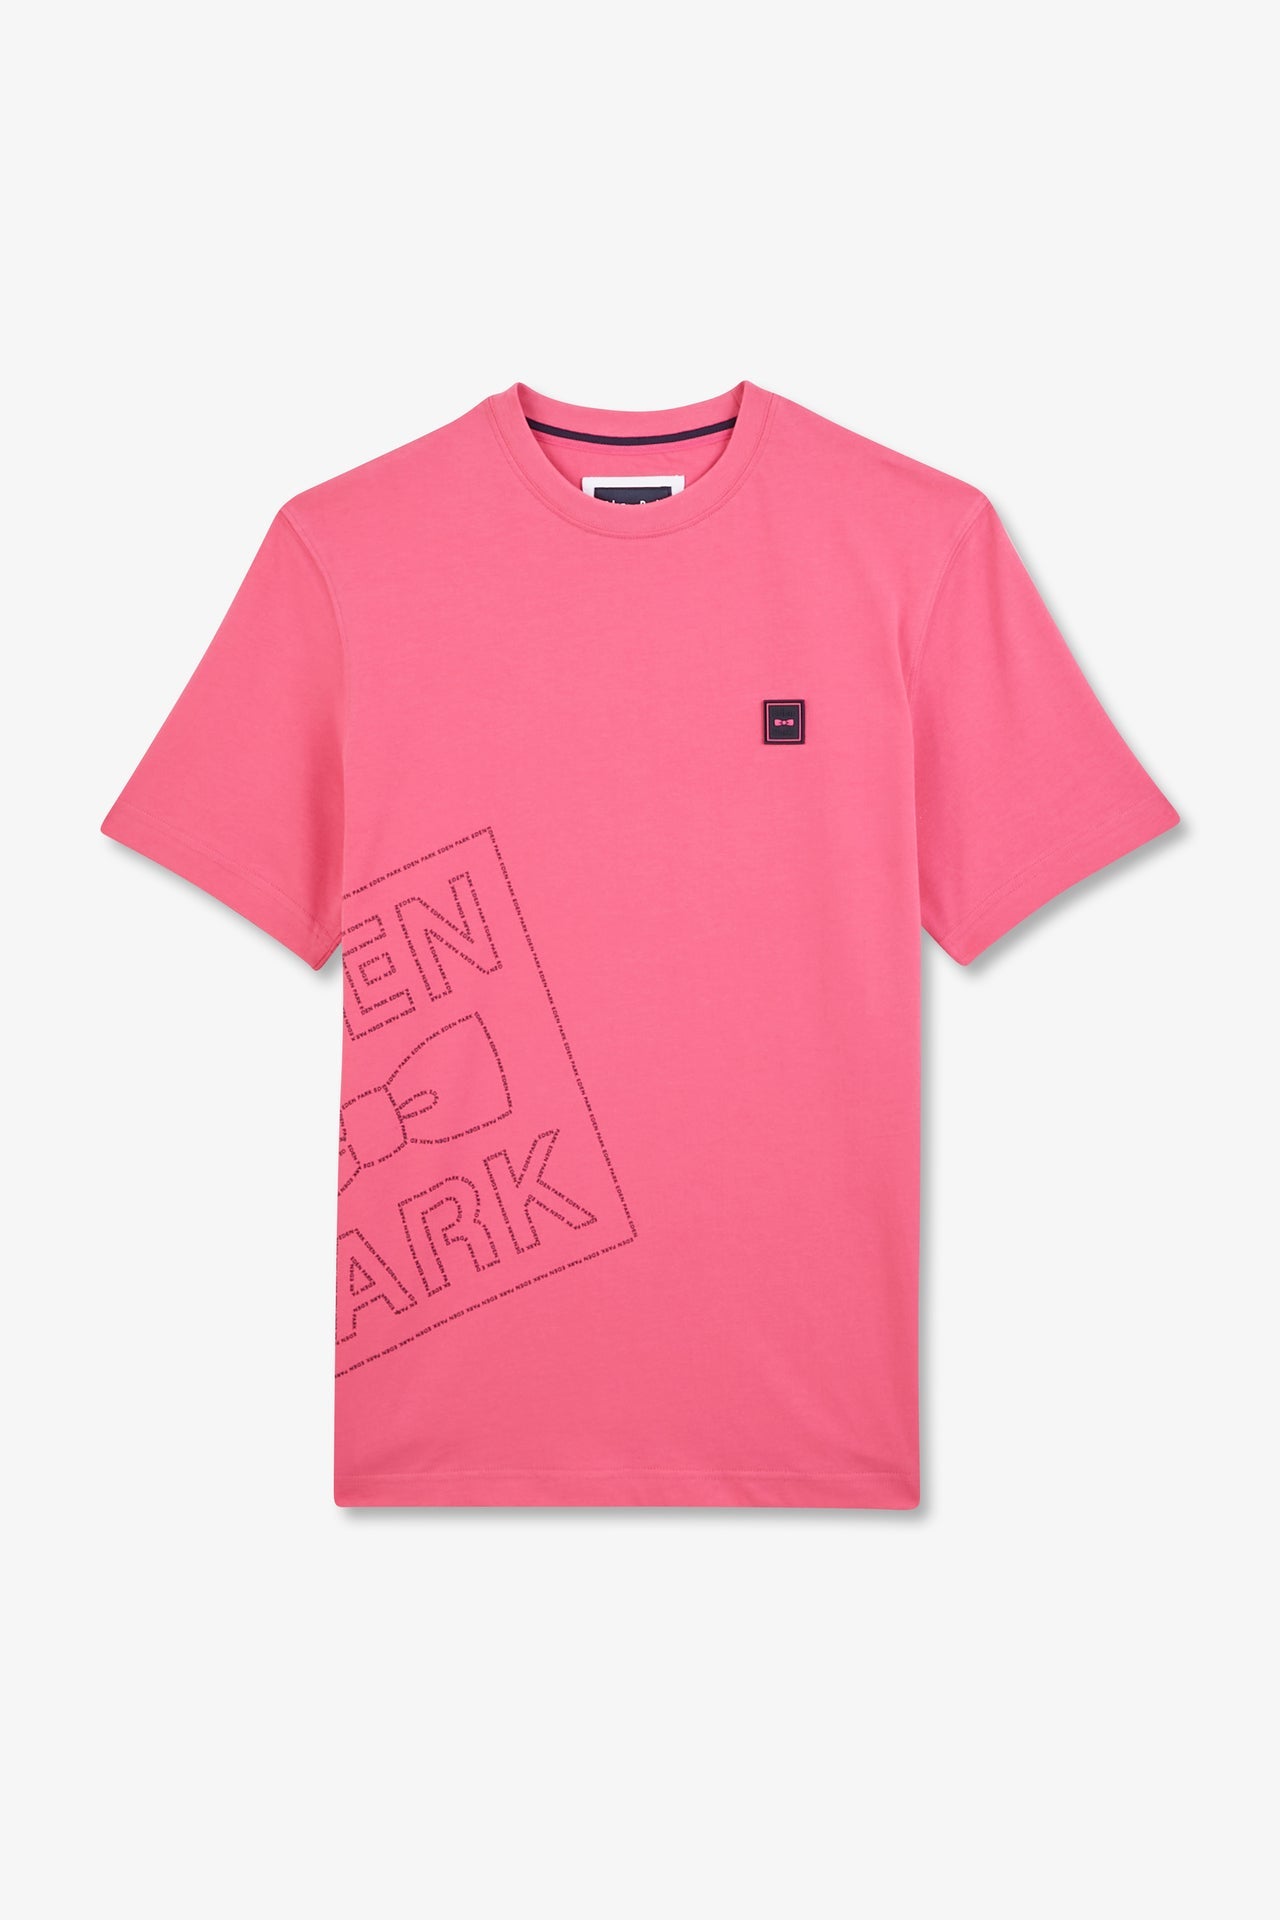 T-shirt rose imprimé Eden Park - Image 2